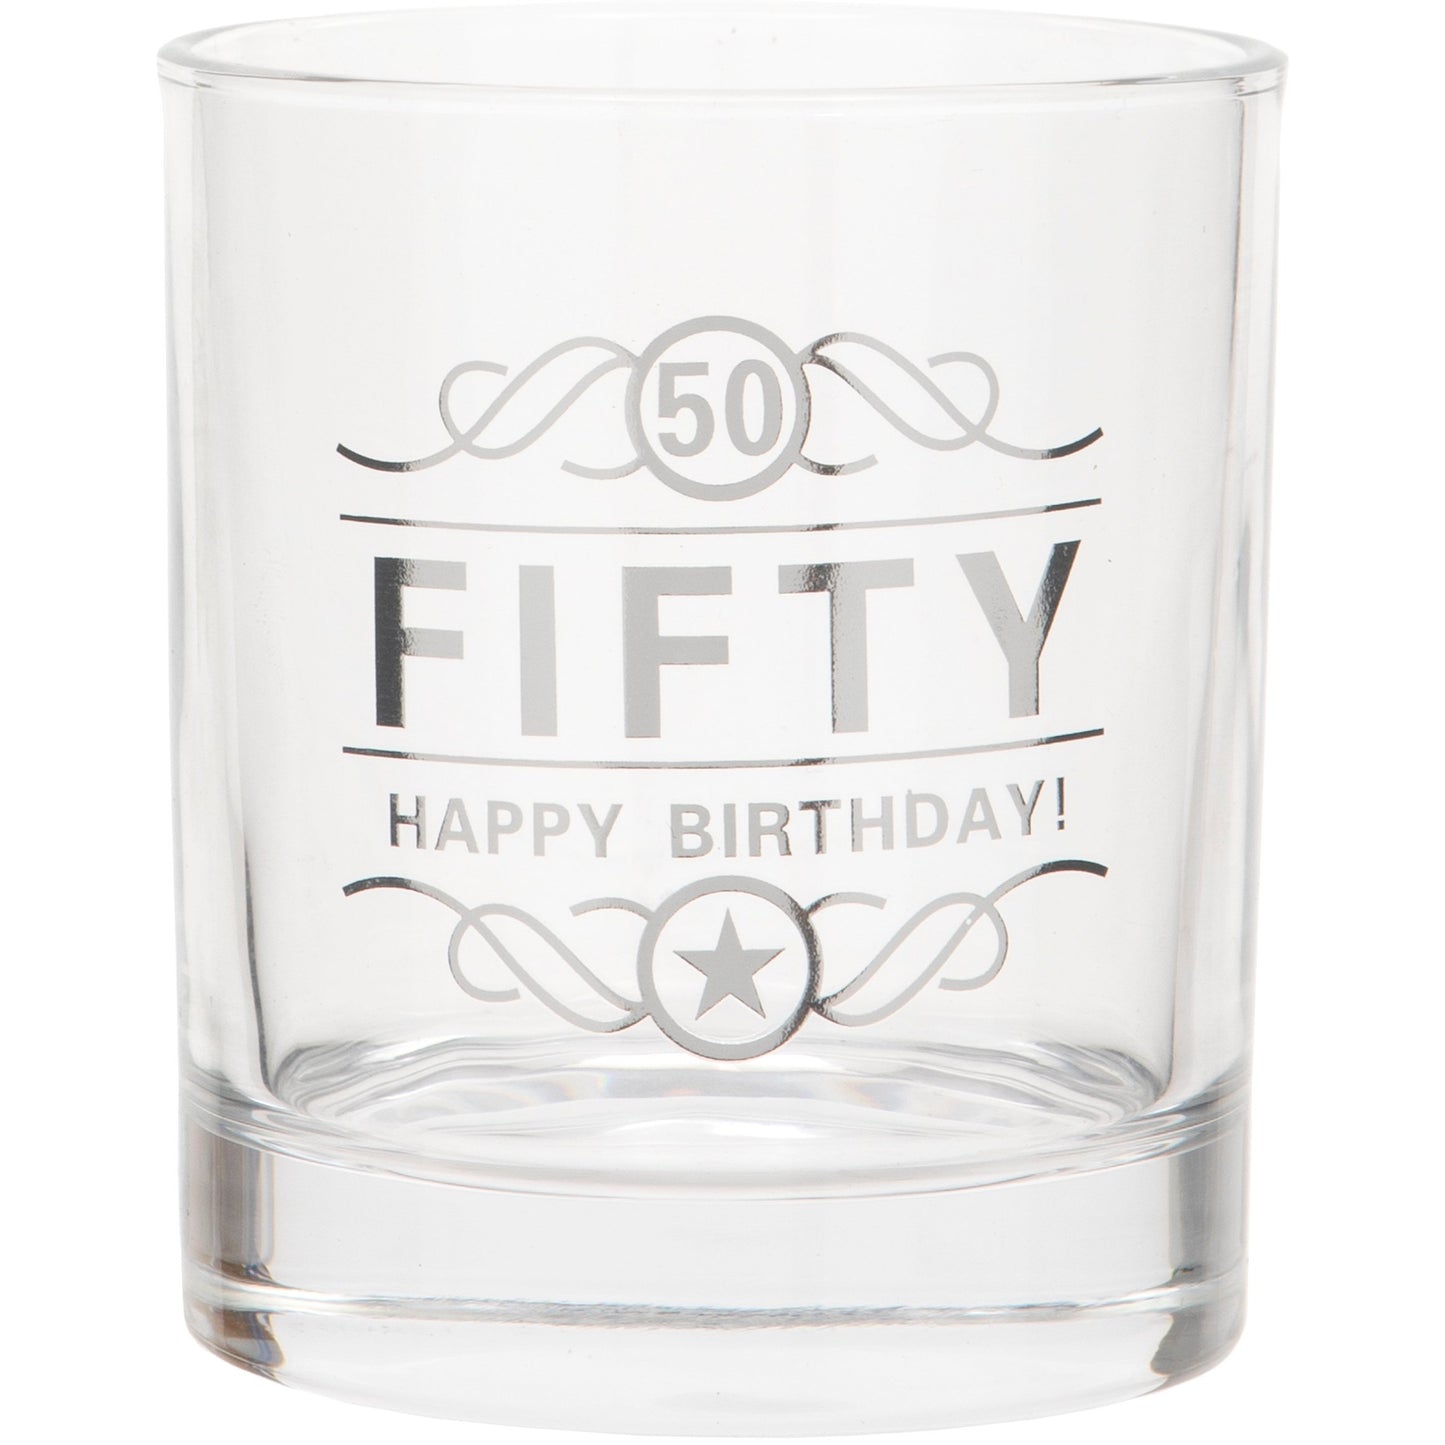 Spirit Glass for Birthday - 50th